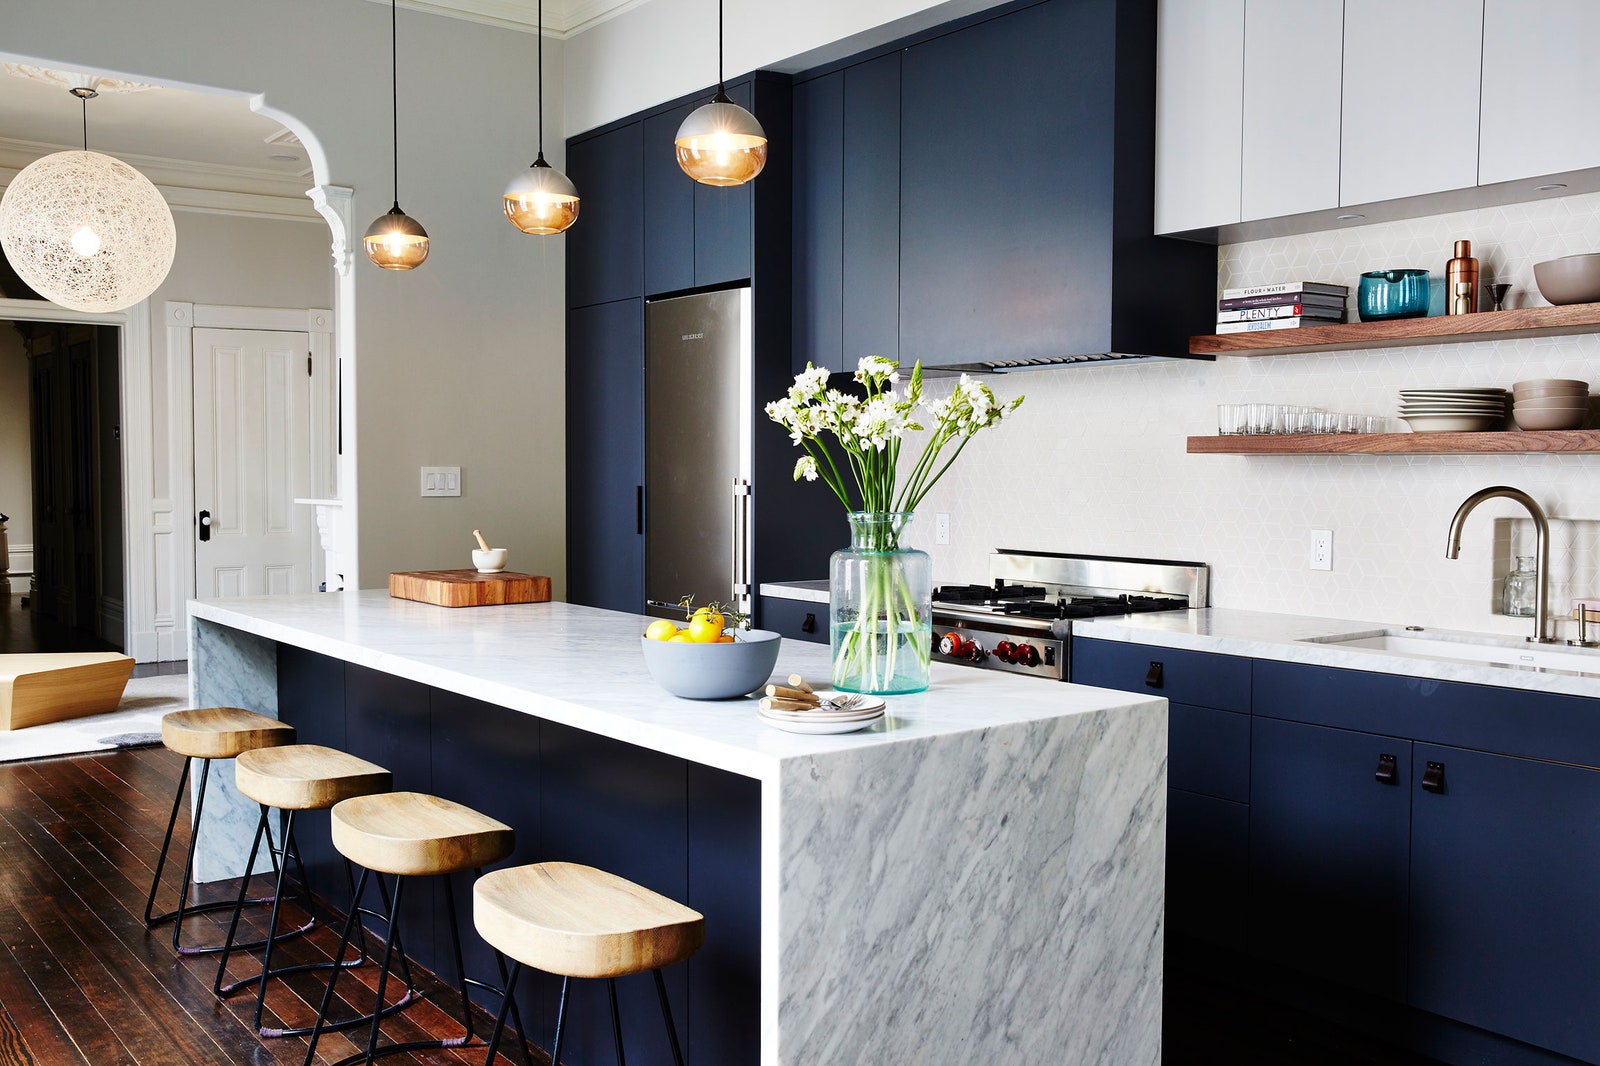 Isn't a navy blue kitchen too dark?